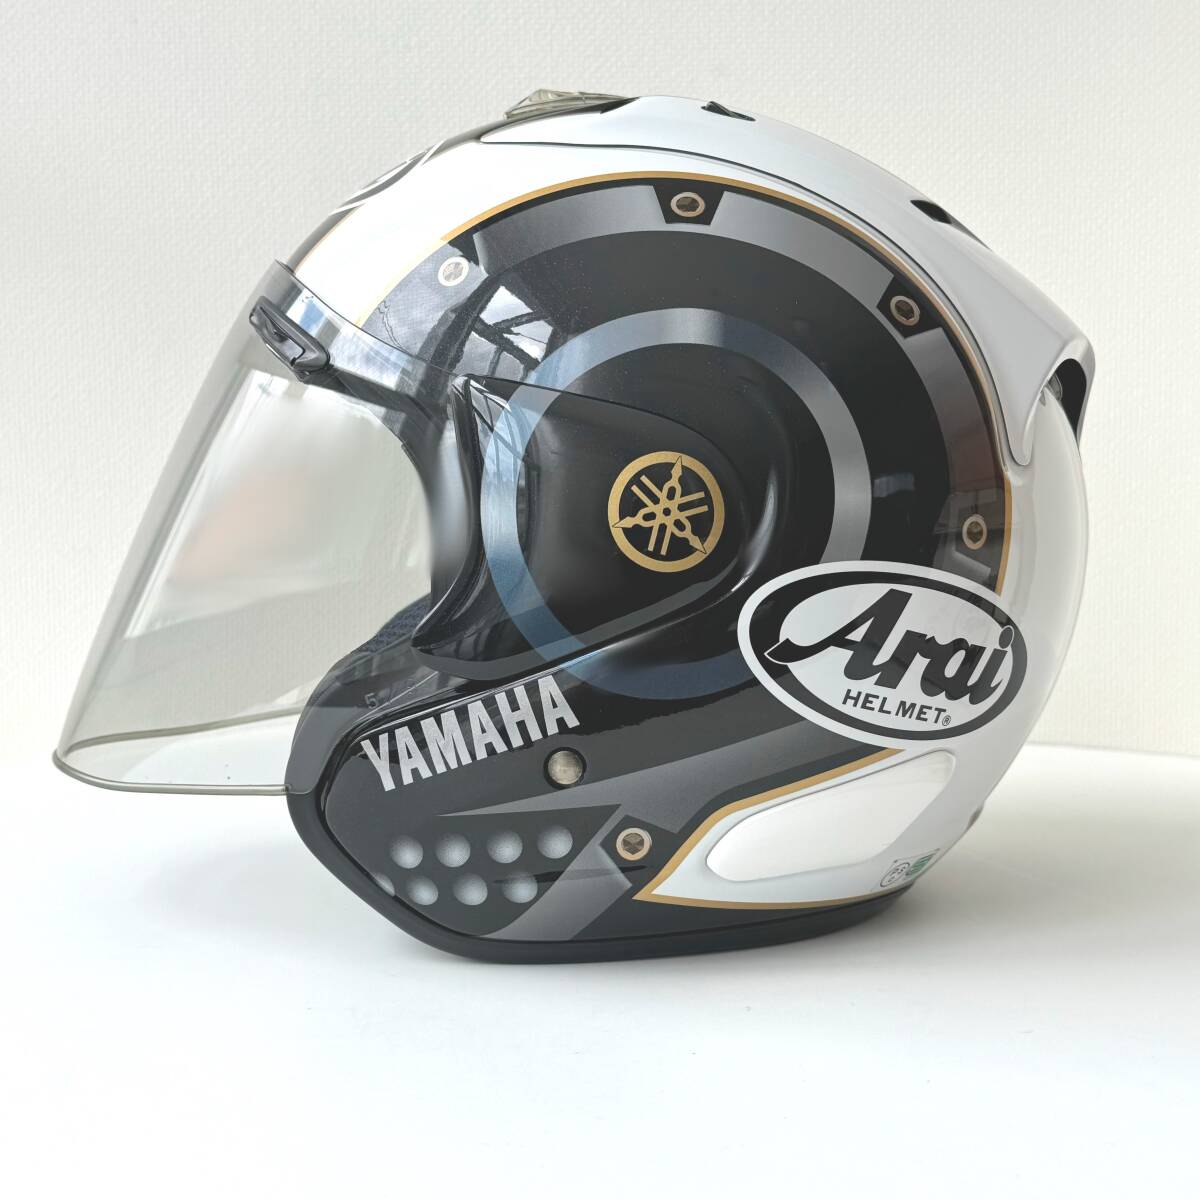 ◆ アライ Arai ヘルメット CRANK クランク SZ-Ram3 57-58cm 保存袋付き ジェットヘルメット ブラック ホワイト ヤマハ YAMAHA バイク用品_画像2